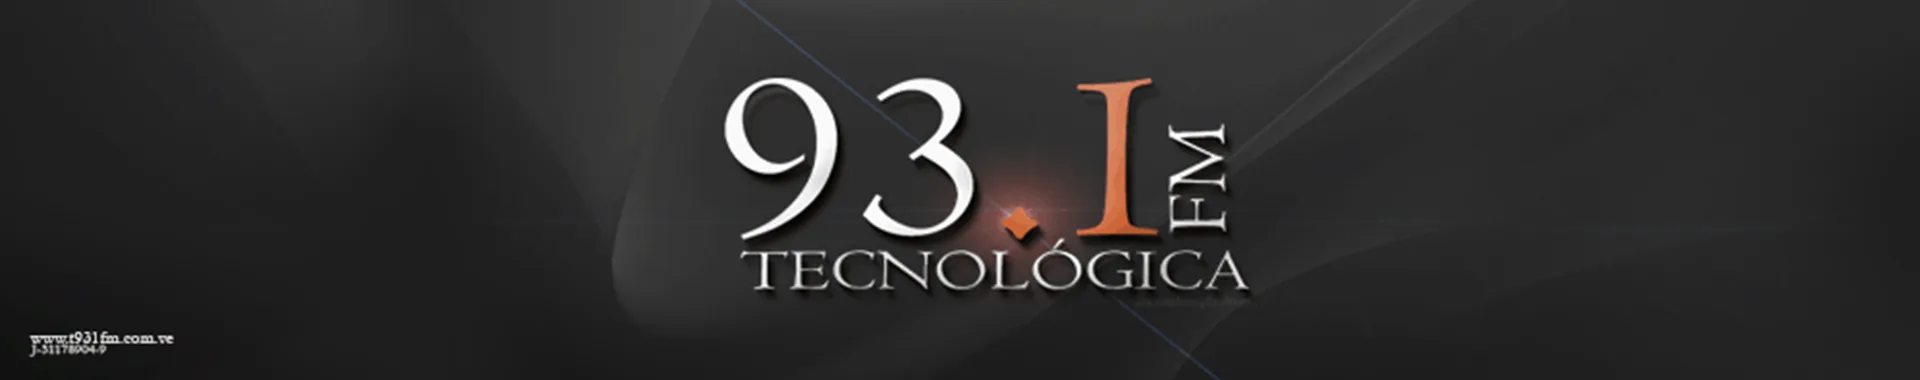 Imagen 1 del perfil de 93.1 FM Tecnológica